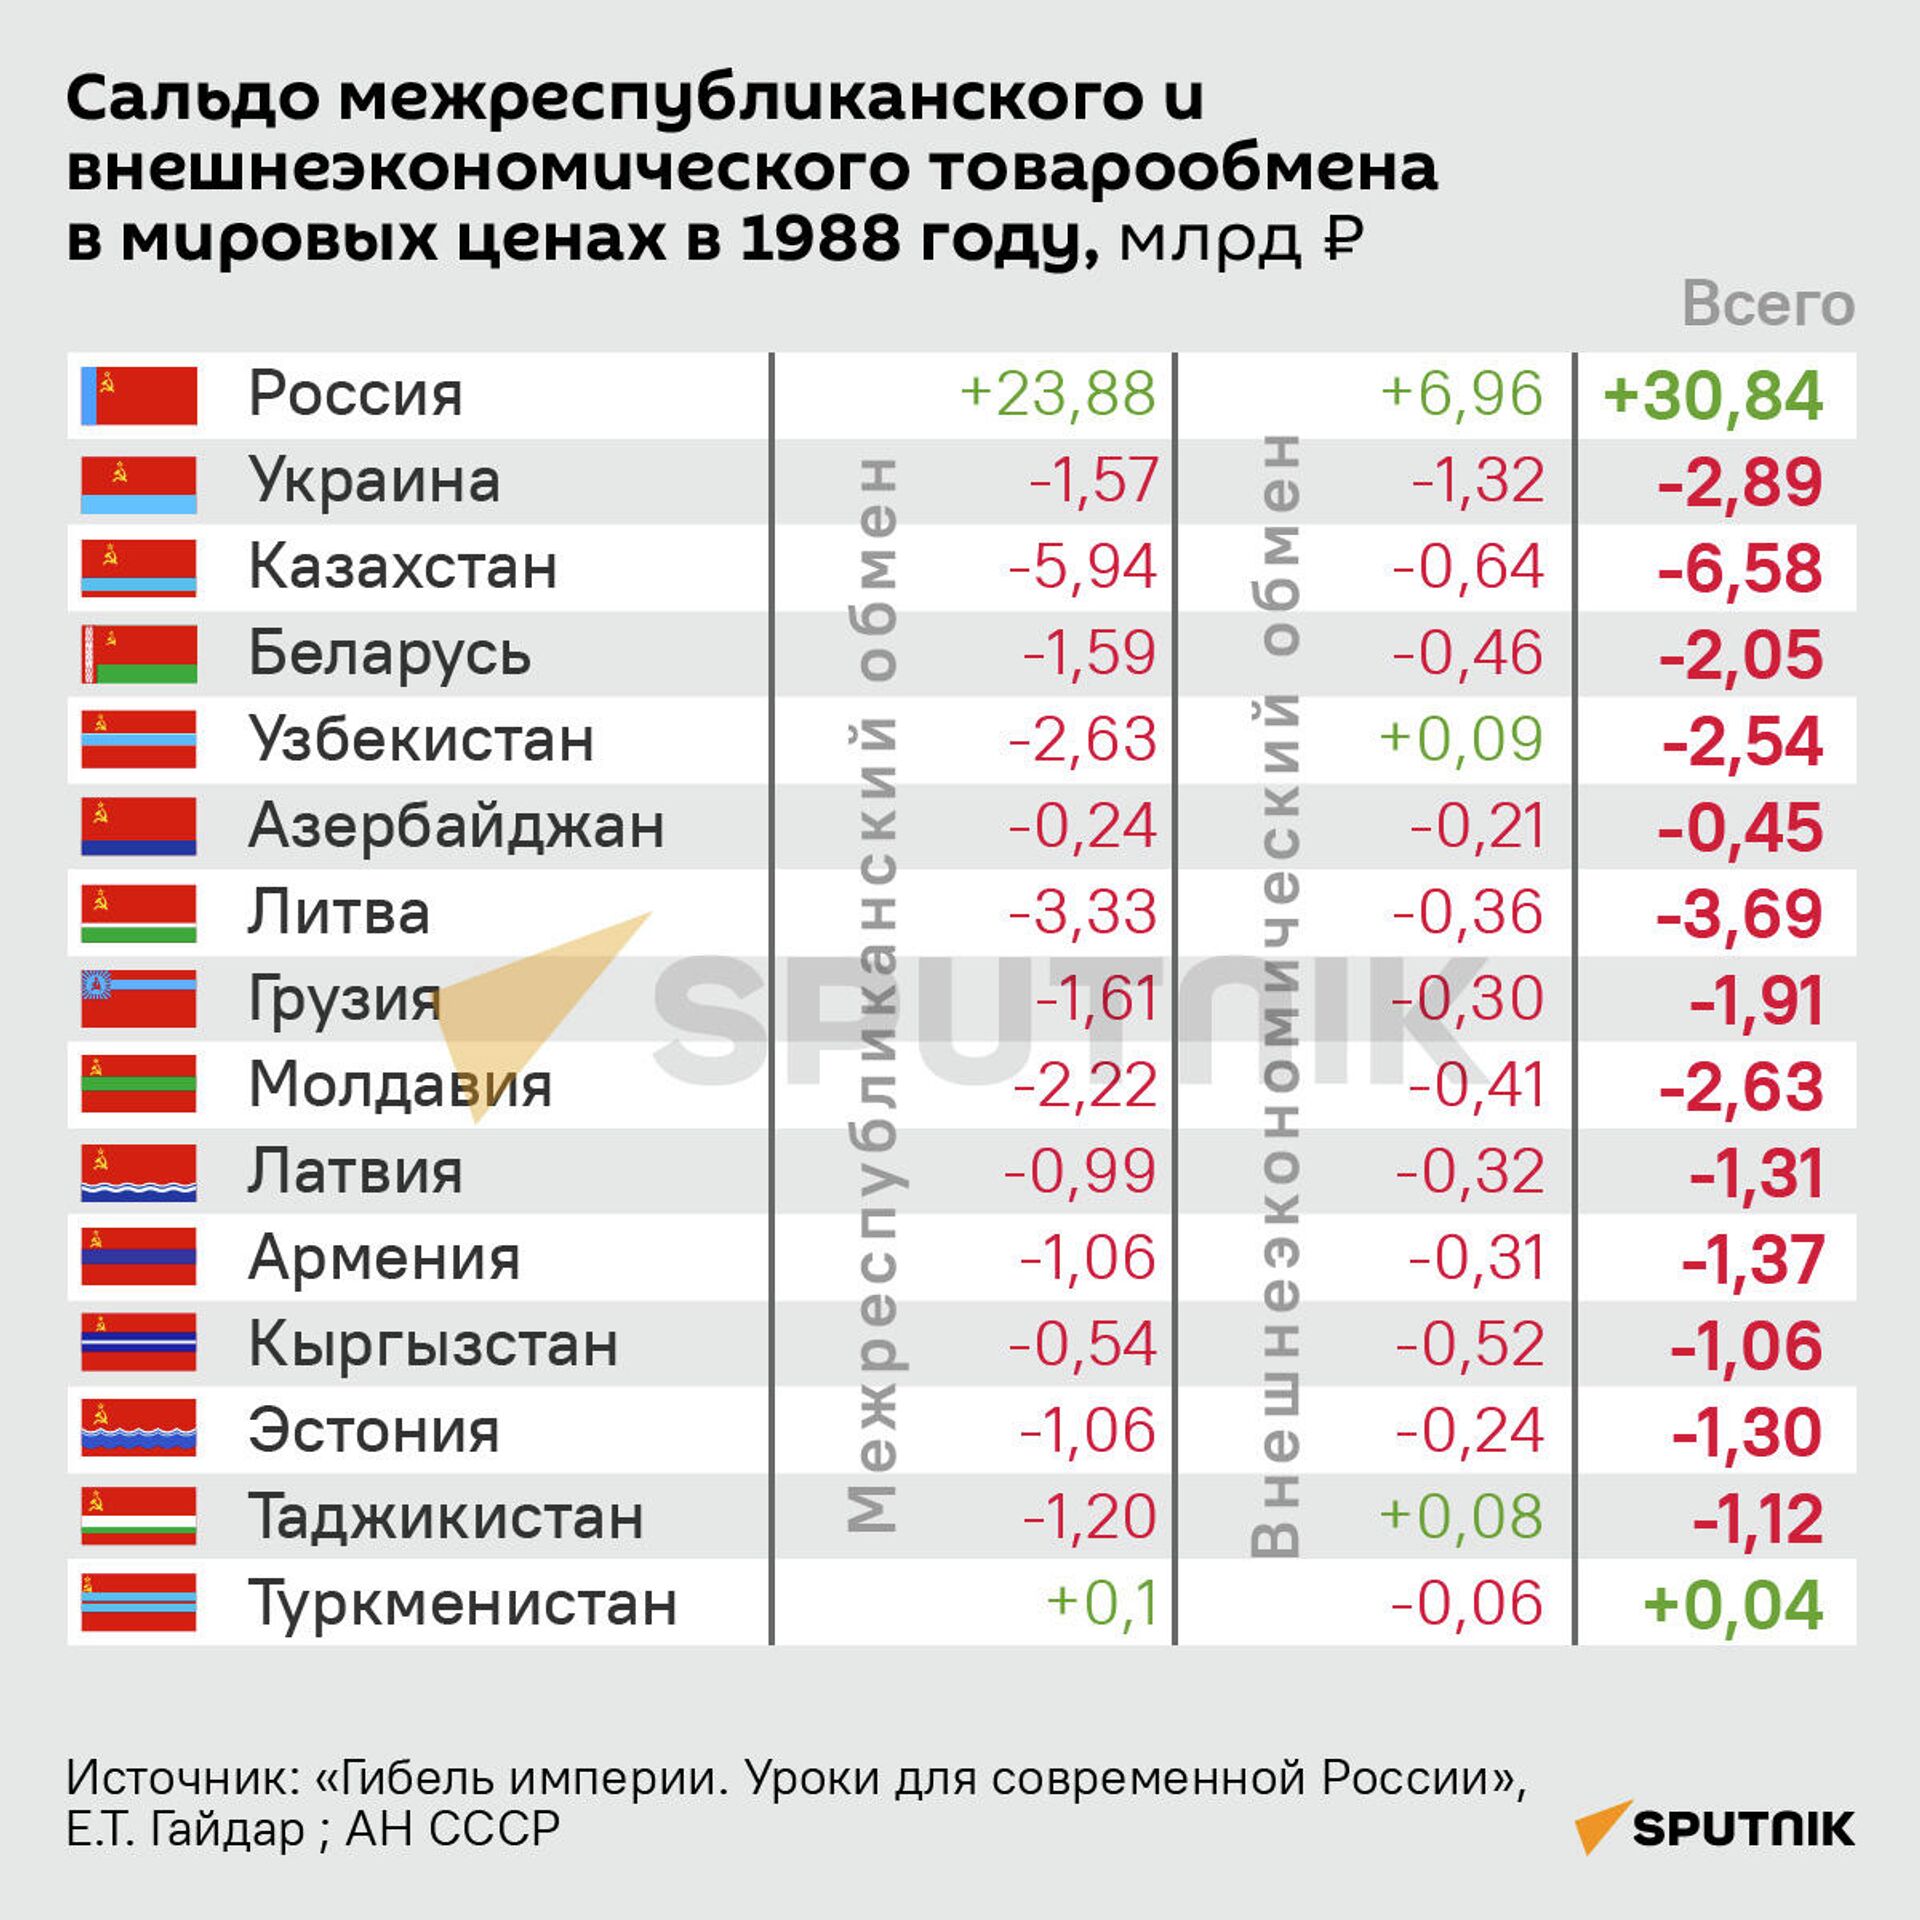 Сальдо межреспубликанского и внешнеэкономического товарообмена в мировых ценах в 1988 году - Sputnik Грузия, 1920, 27.12.2021